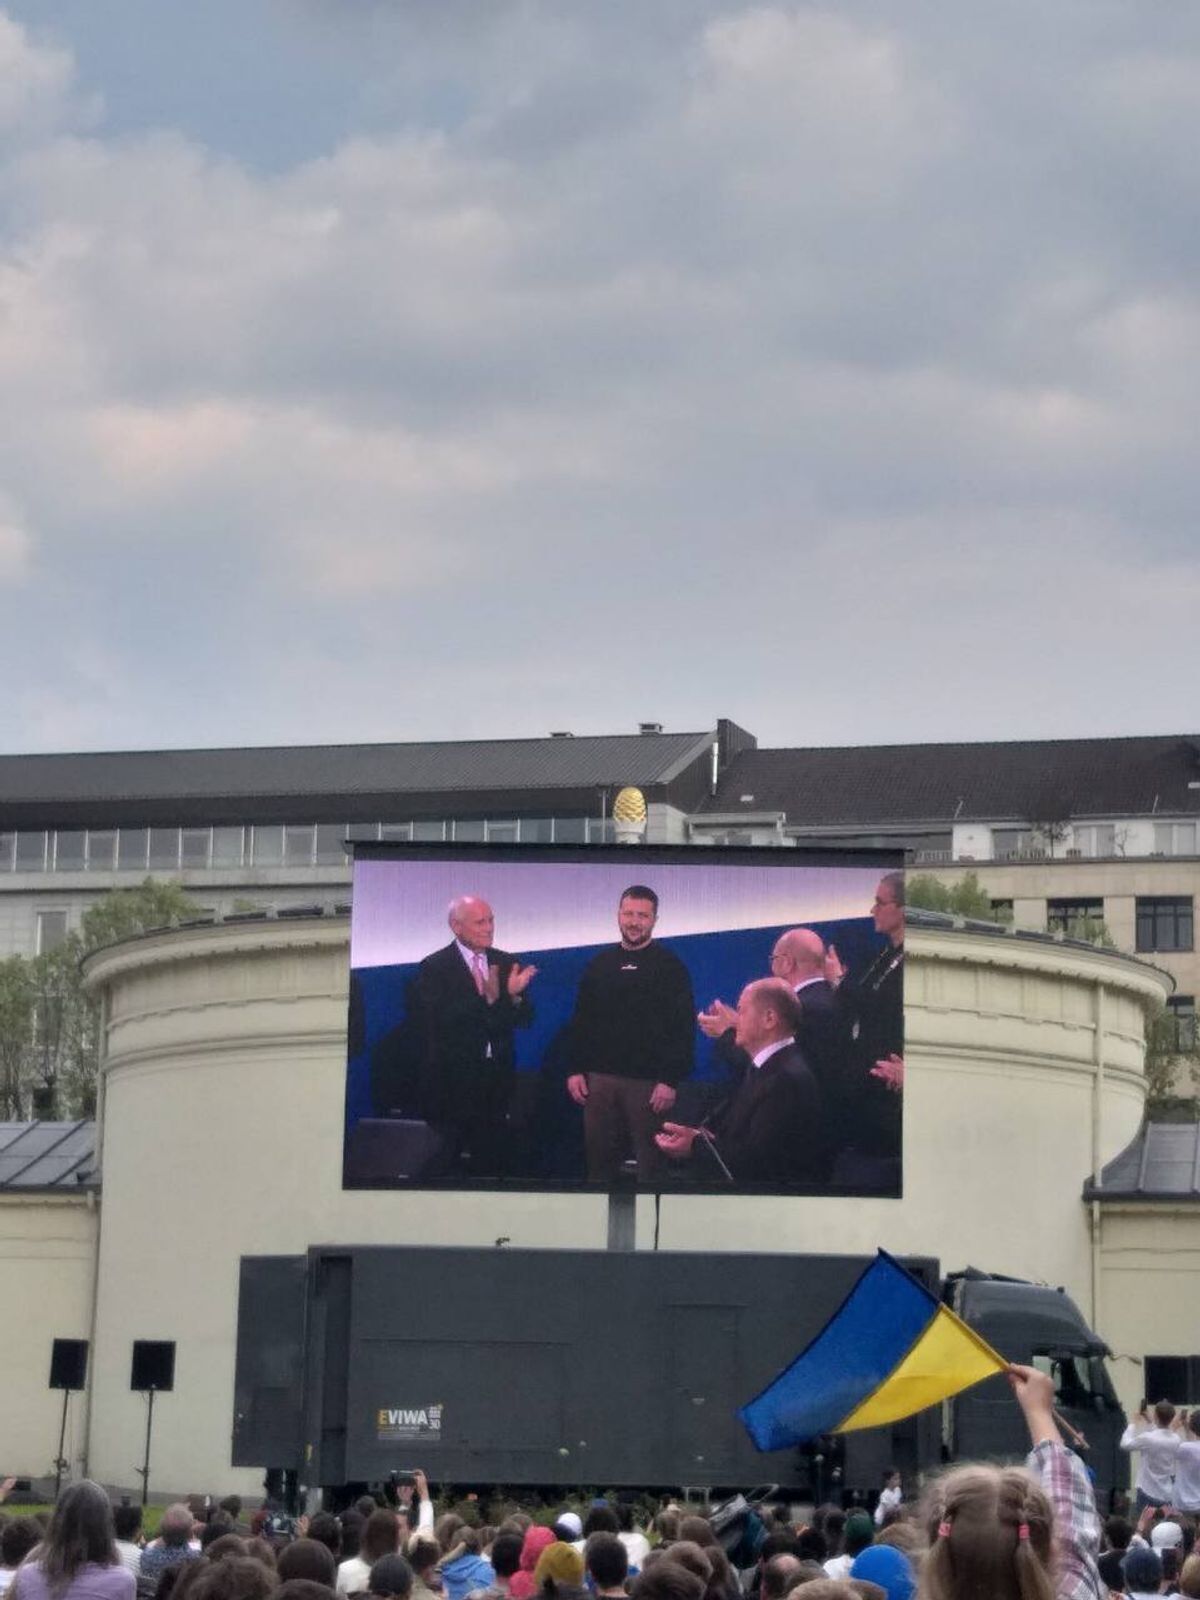 Люди наблюдали за президентом Украины